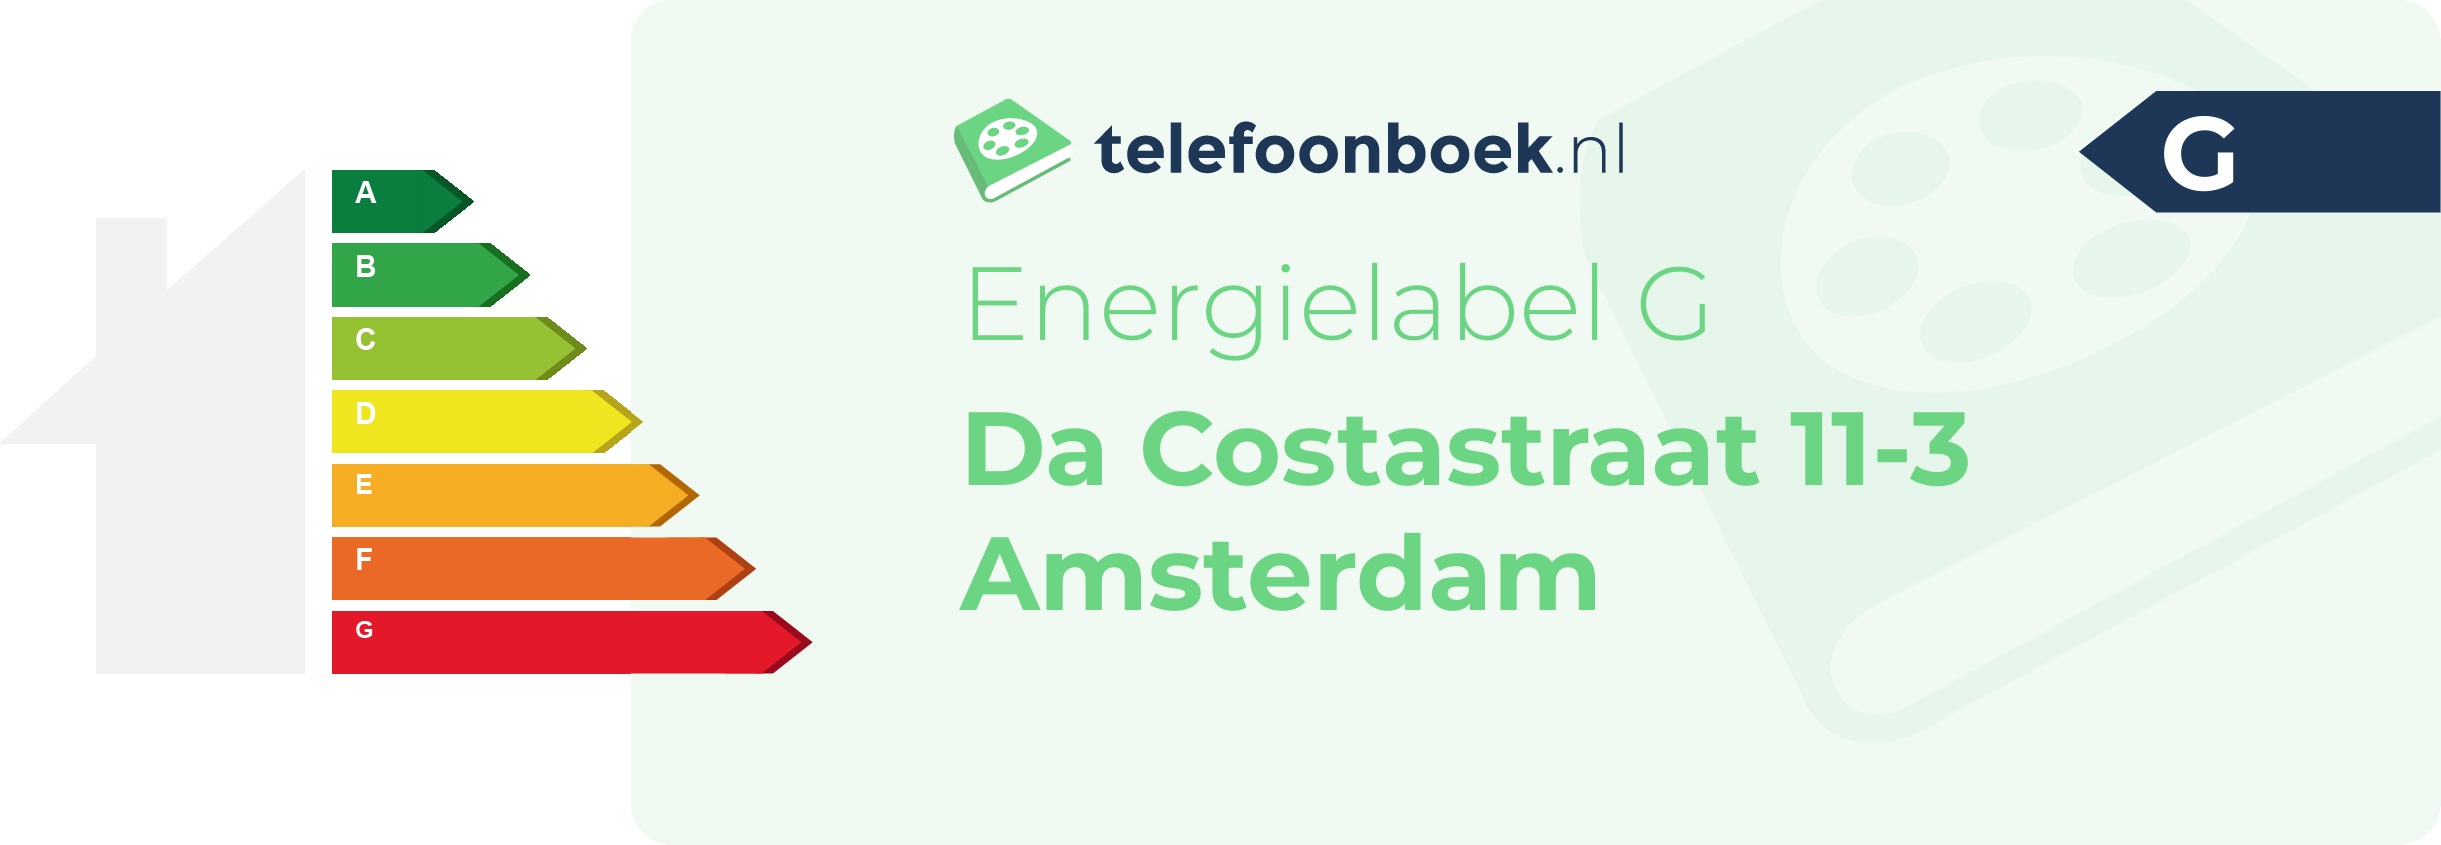 Energielabel Da Costastraat 11-3 Amsterdam